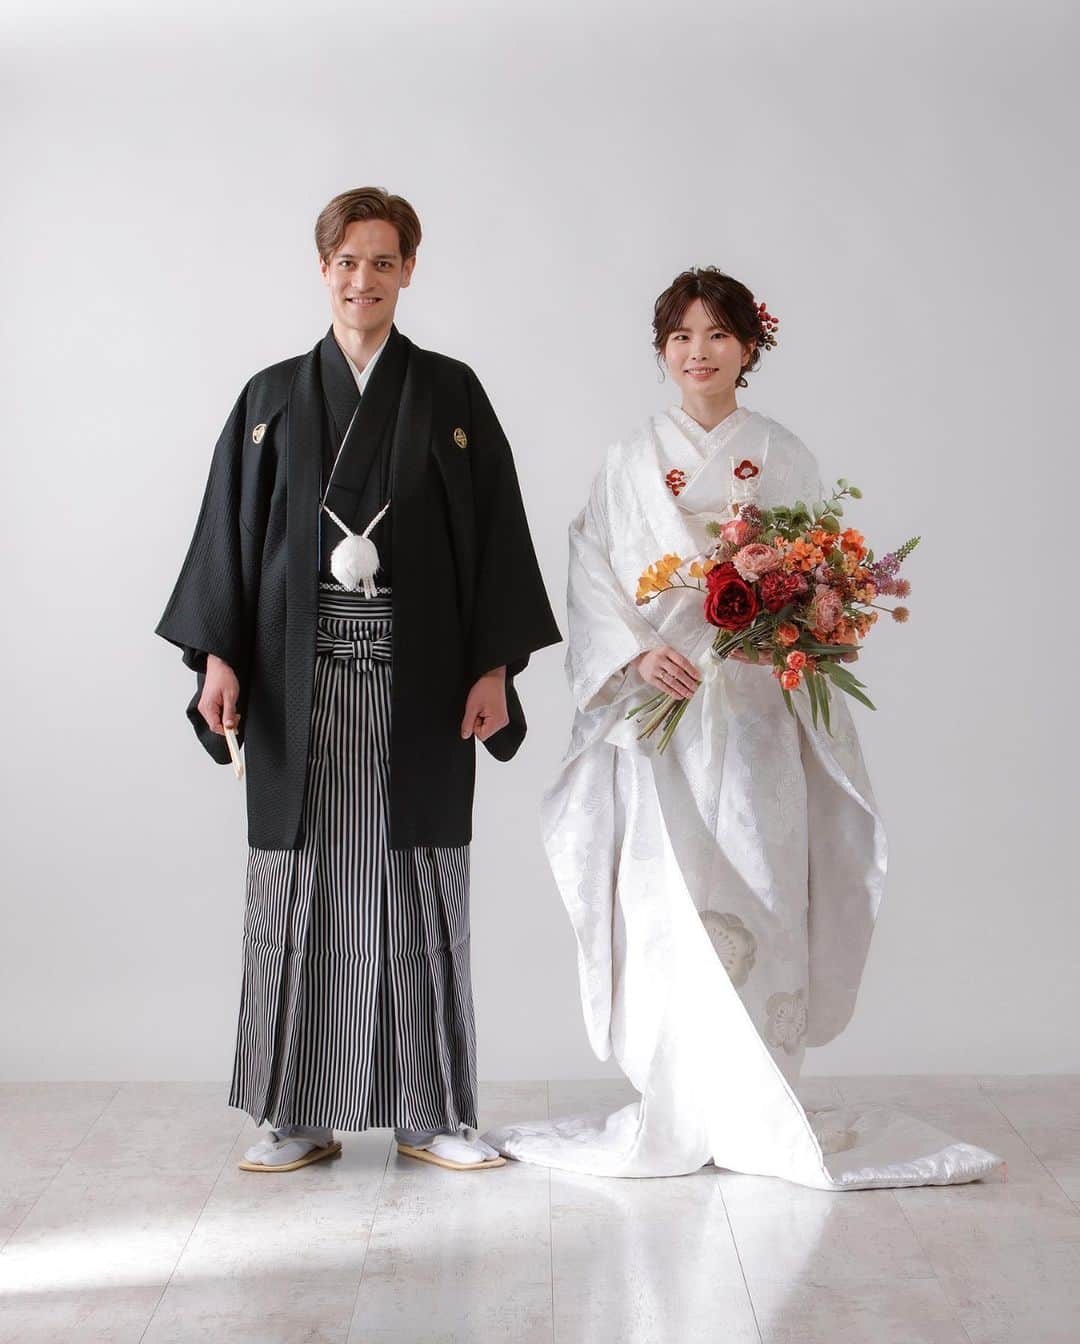 Tomoya Tamadaさんのインスタグラム写真 - (Tomoya TamadaInstagram)「和装前撮り撮影🤍🥰 【 @kimonoito 和装コラボフォトプラン 】  古典的でレトロな王道和装スタイルから、形式に捉われないファッション性の高いモダンなスタイルまで、お二人の個性を活かした特別なお写真をご提案させていただきます。  ●コラボフォトプラン内容  ・スタジオ撮影 or ロケーション撮影 ・新婦様衣裳 1式 (白無垢、色打掛、引き振袖から1点) ・新郎様衣裳 1式 (黒紋服、色紋服から1点) ・ヘアメイク&着付け ・ブーケ/ヘッドドレス ・撮影(100カット以上〜)  ＊白無垢＋色打掛の和装2点のプランもありますのでお気軽にお問い合わせ下さいませ。  こちらのコラボプランでは、 @masashiro_hosaka  @tama_hairmake が担当させて頂きます。  ●お問い合わせ @kimonoitoのハイライトにあります、 ラインアカウントQRコードを読み込んで頂き、 ご連絡お待ちしております。  上記以外のお問い合わせ先は  ・kimono絲HP ・TEL:0368211710  こちらまで、宜しくお願い致します。  ご質問・ご相談は【お問い合わせ】フォームまで お気軽にご連絡くださいませ。  ＿＿＿＿＿＿＿＿＿＿＿＿＿＿＿＿＿＿＿＿＿＿＿＿＿＿  【 現在、募集中のセミナー 】  ●8月7日(月曜日)  鹿児島  ●8月15日(火曜日)  東京  ●8月21日(月曜日)  大阪   ●8月22日(火曜日)  大阪  ●8月28日(月曜日)  静岡  ●8月29日(火曜日)  静岡  ●9月5日(火曜日)  東京  当日の詳細、ご応募に関しましてはホームページの 「セミナー告知」に記載しておりますので ご応募お待ちしております☺︎  ＿＿＿＿＿＿＿＿＿＿＿＿＿＿＿＿＿＿＿＿＿＿＿＿＿＿  開催告知しているセミナー以外でも 個人様、企業様へ向けた臨店講習も行なっております。 臨店講習のお問い合わせは、こちらから宜しくお願い致します。  LINE ID ➡️ @ntb4770x  雑誌、広告、web撮影などのご依頼もお気軽にお問い合わせ下さいませ。 ご依頼に関するお問い合わせは、ホームページの 「お問い合わせ」からご連絡お待ちしております。  #ウェディング#ブライダル#花嫁#結婚式#結婚式準備#前撮り#和装#和装前撮り#weddingphoto#ウェディングフォト#プレ花嫁#プレ花嫁さんと繋がりたい#プレ花嫁準備#2023春婚#2023夏婚#2023秋婚#鹿児島花嫁#東京花嫁#ウェディングヘア#ブライダルヘア#ヘアアレンジ#ヘアメイク#花嫁ヘア#ウェディングドレス#weddinghair#bridalhair#新娘化妝#新娘秘書#新娘髮型#웨딩」8月3日 21時18分 - tama_hairmake